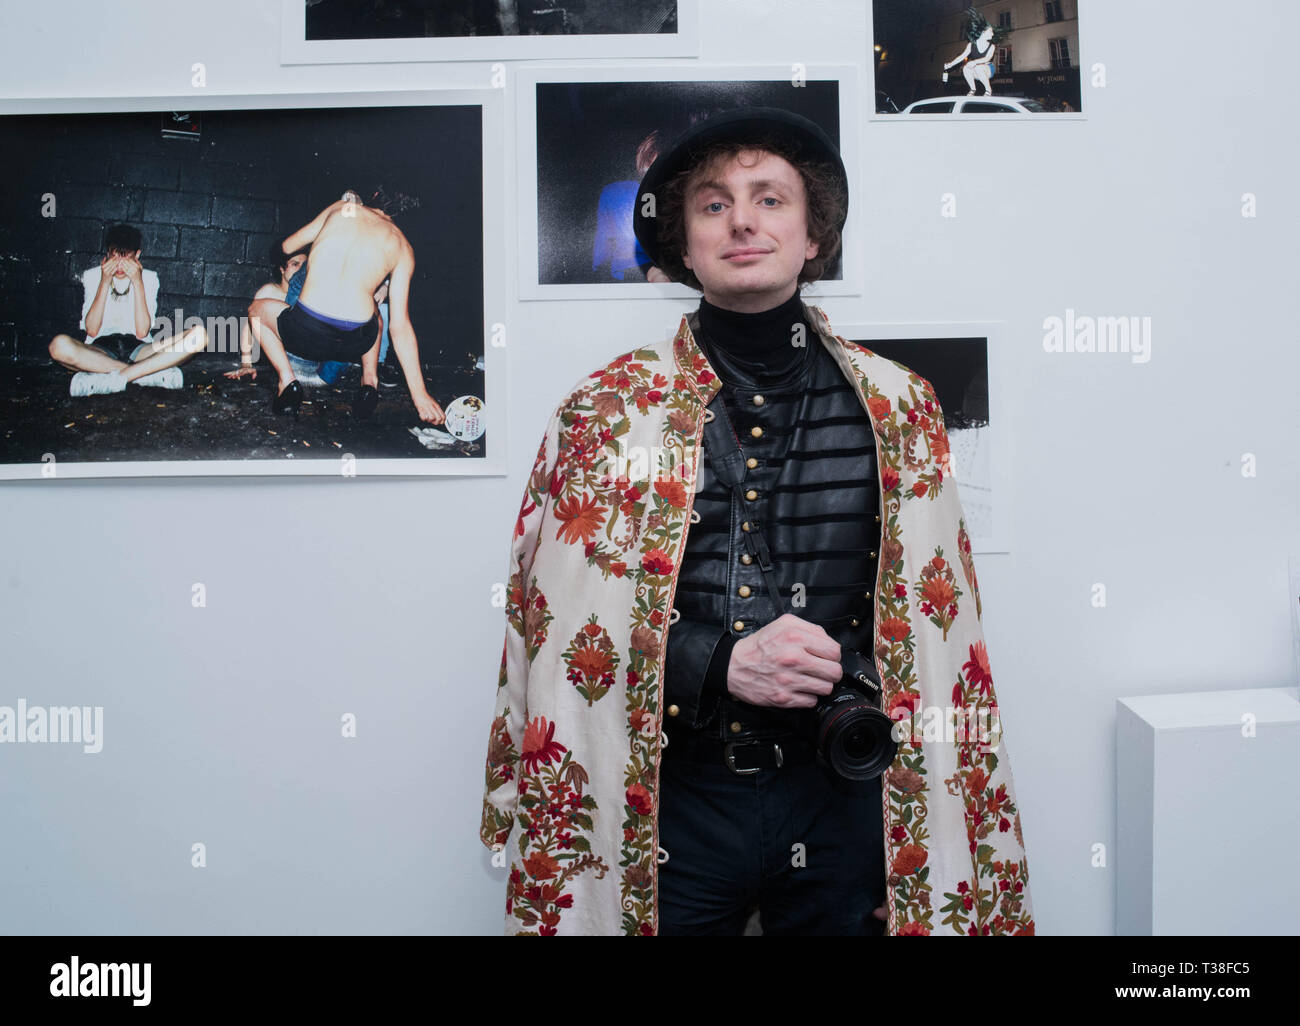 Hannibal Volkoff exhibition at La Clef, Saint Germain en Laye Stock Photo